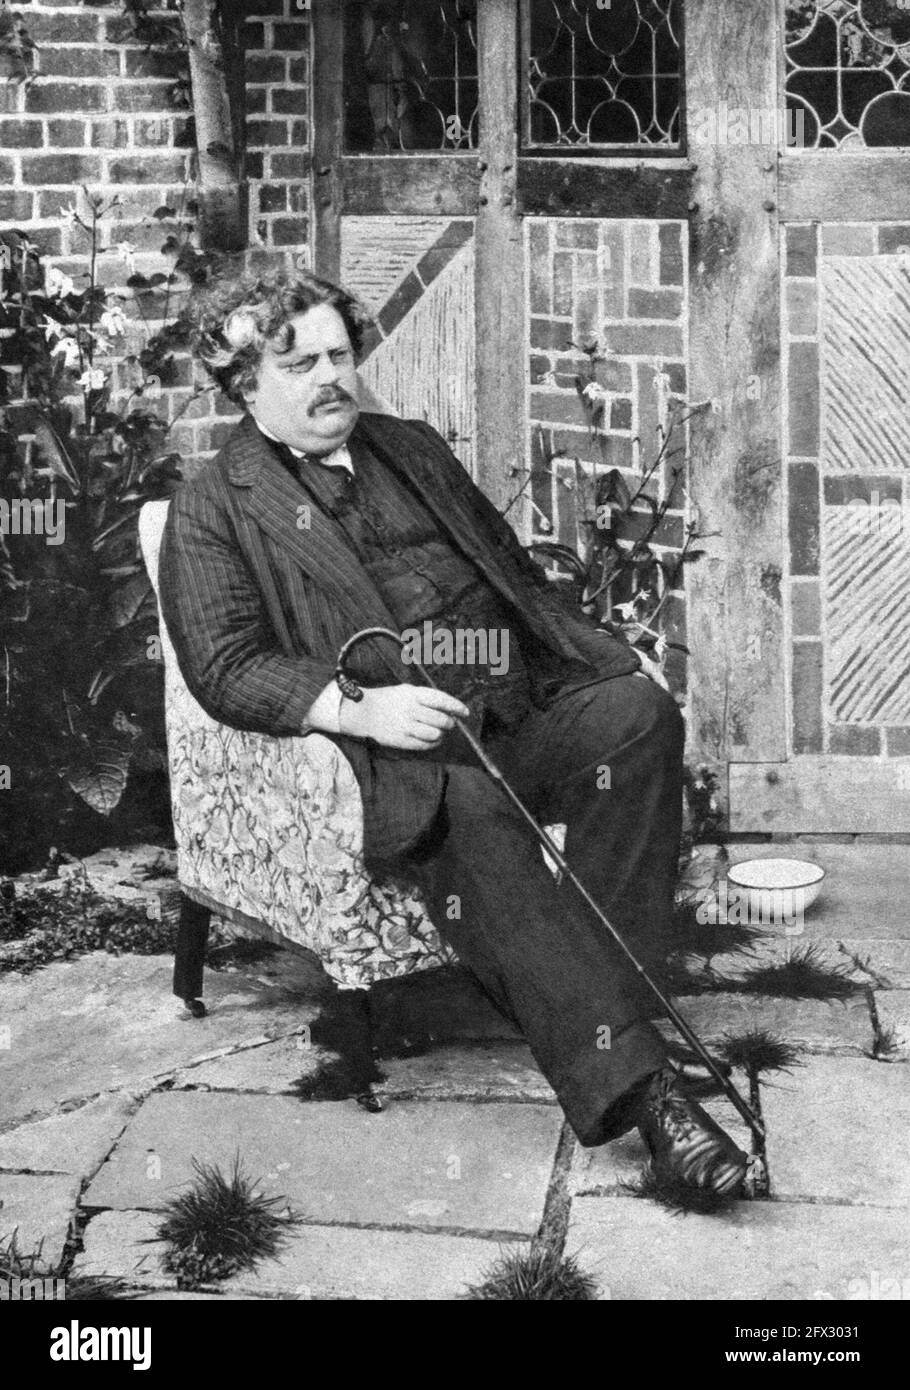 Gilbert Keith Chesterton (1874 - 1936), bekannt als G.K. Chesterton, gezeigt c1914, war ein führender britischer Autor, Denker, Journalist, Kunstkritiker, Debattierer, Laientheologe und christlicher Apologe des frühen 20. Jahrhunderts. Als produktiver Schriftsteller veröffentlichte er fast 100 Bücher und über 4,000 Zeitungskolumnen und Essays. Stockfoto